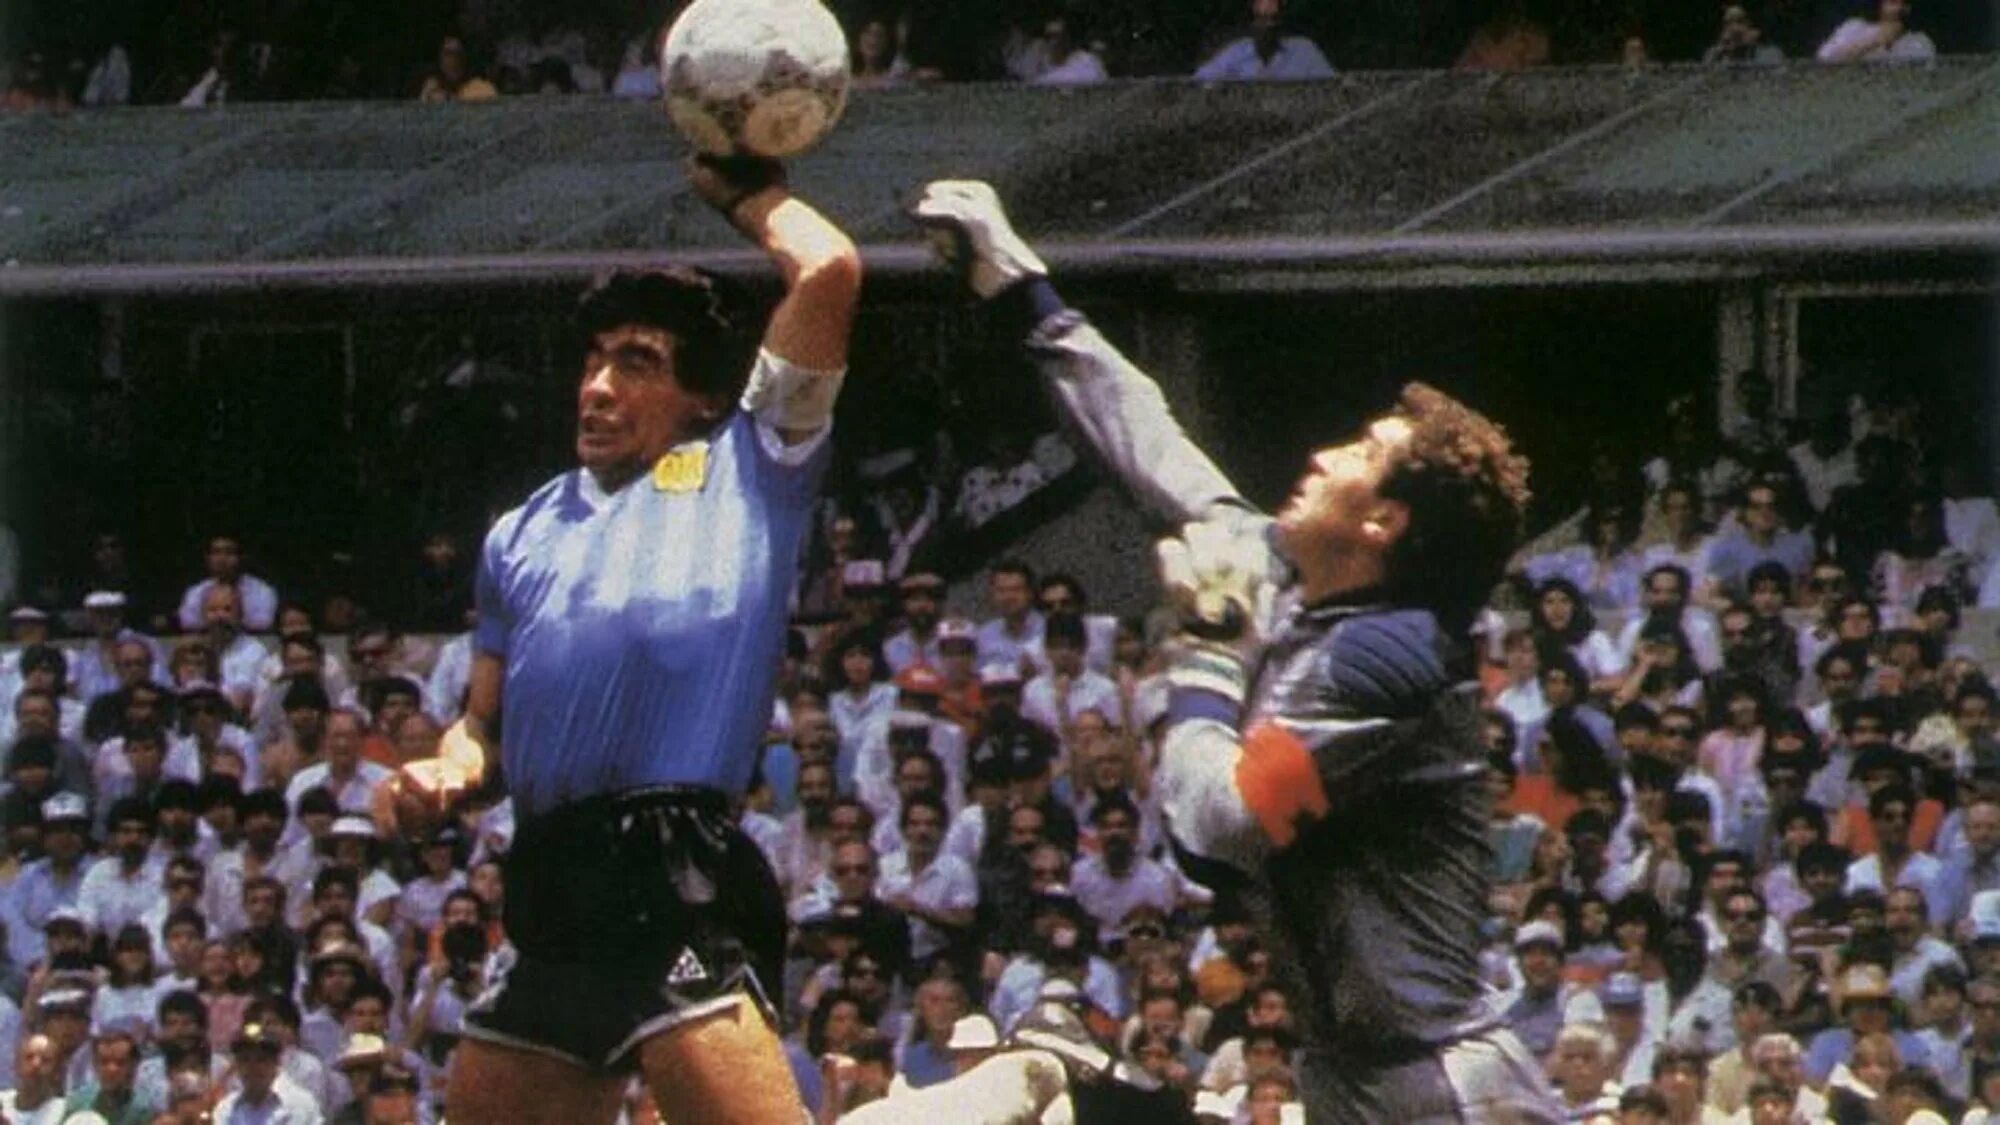 Диего Армандо Марадона рука Бога. Диего Марадона 1986 рука Бога. Диего Марадона, 1986 год. Марадонна в 1986 году.